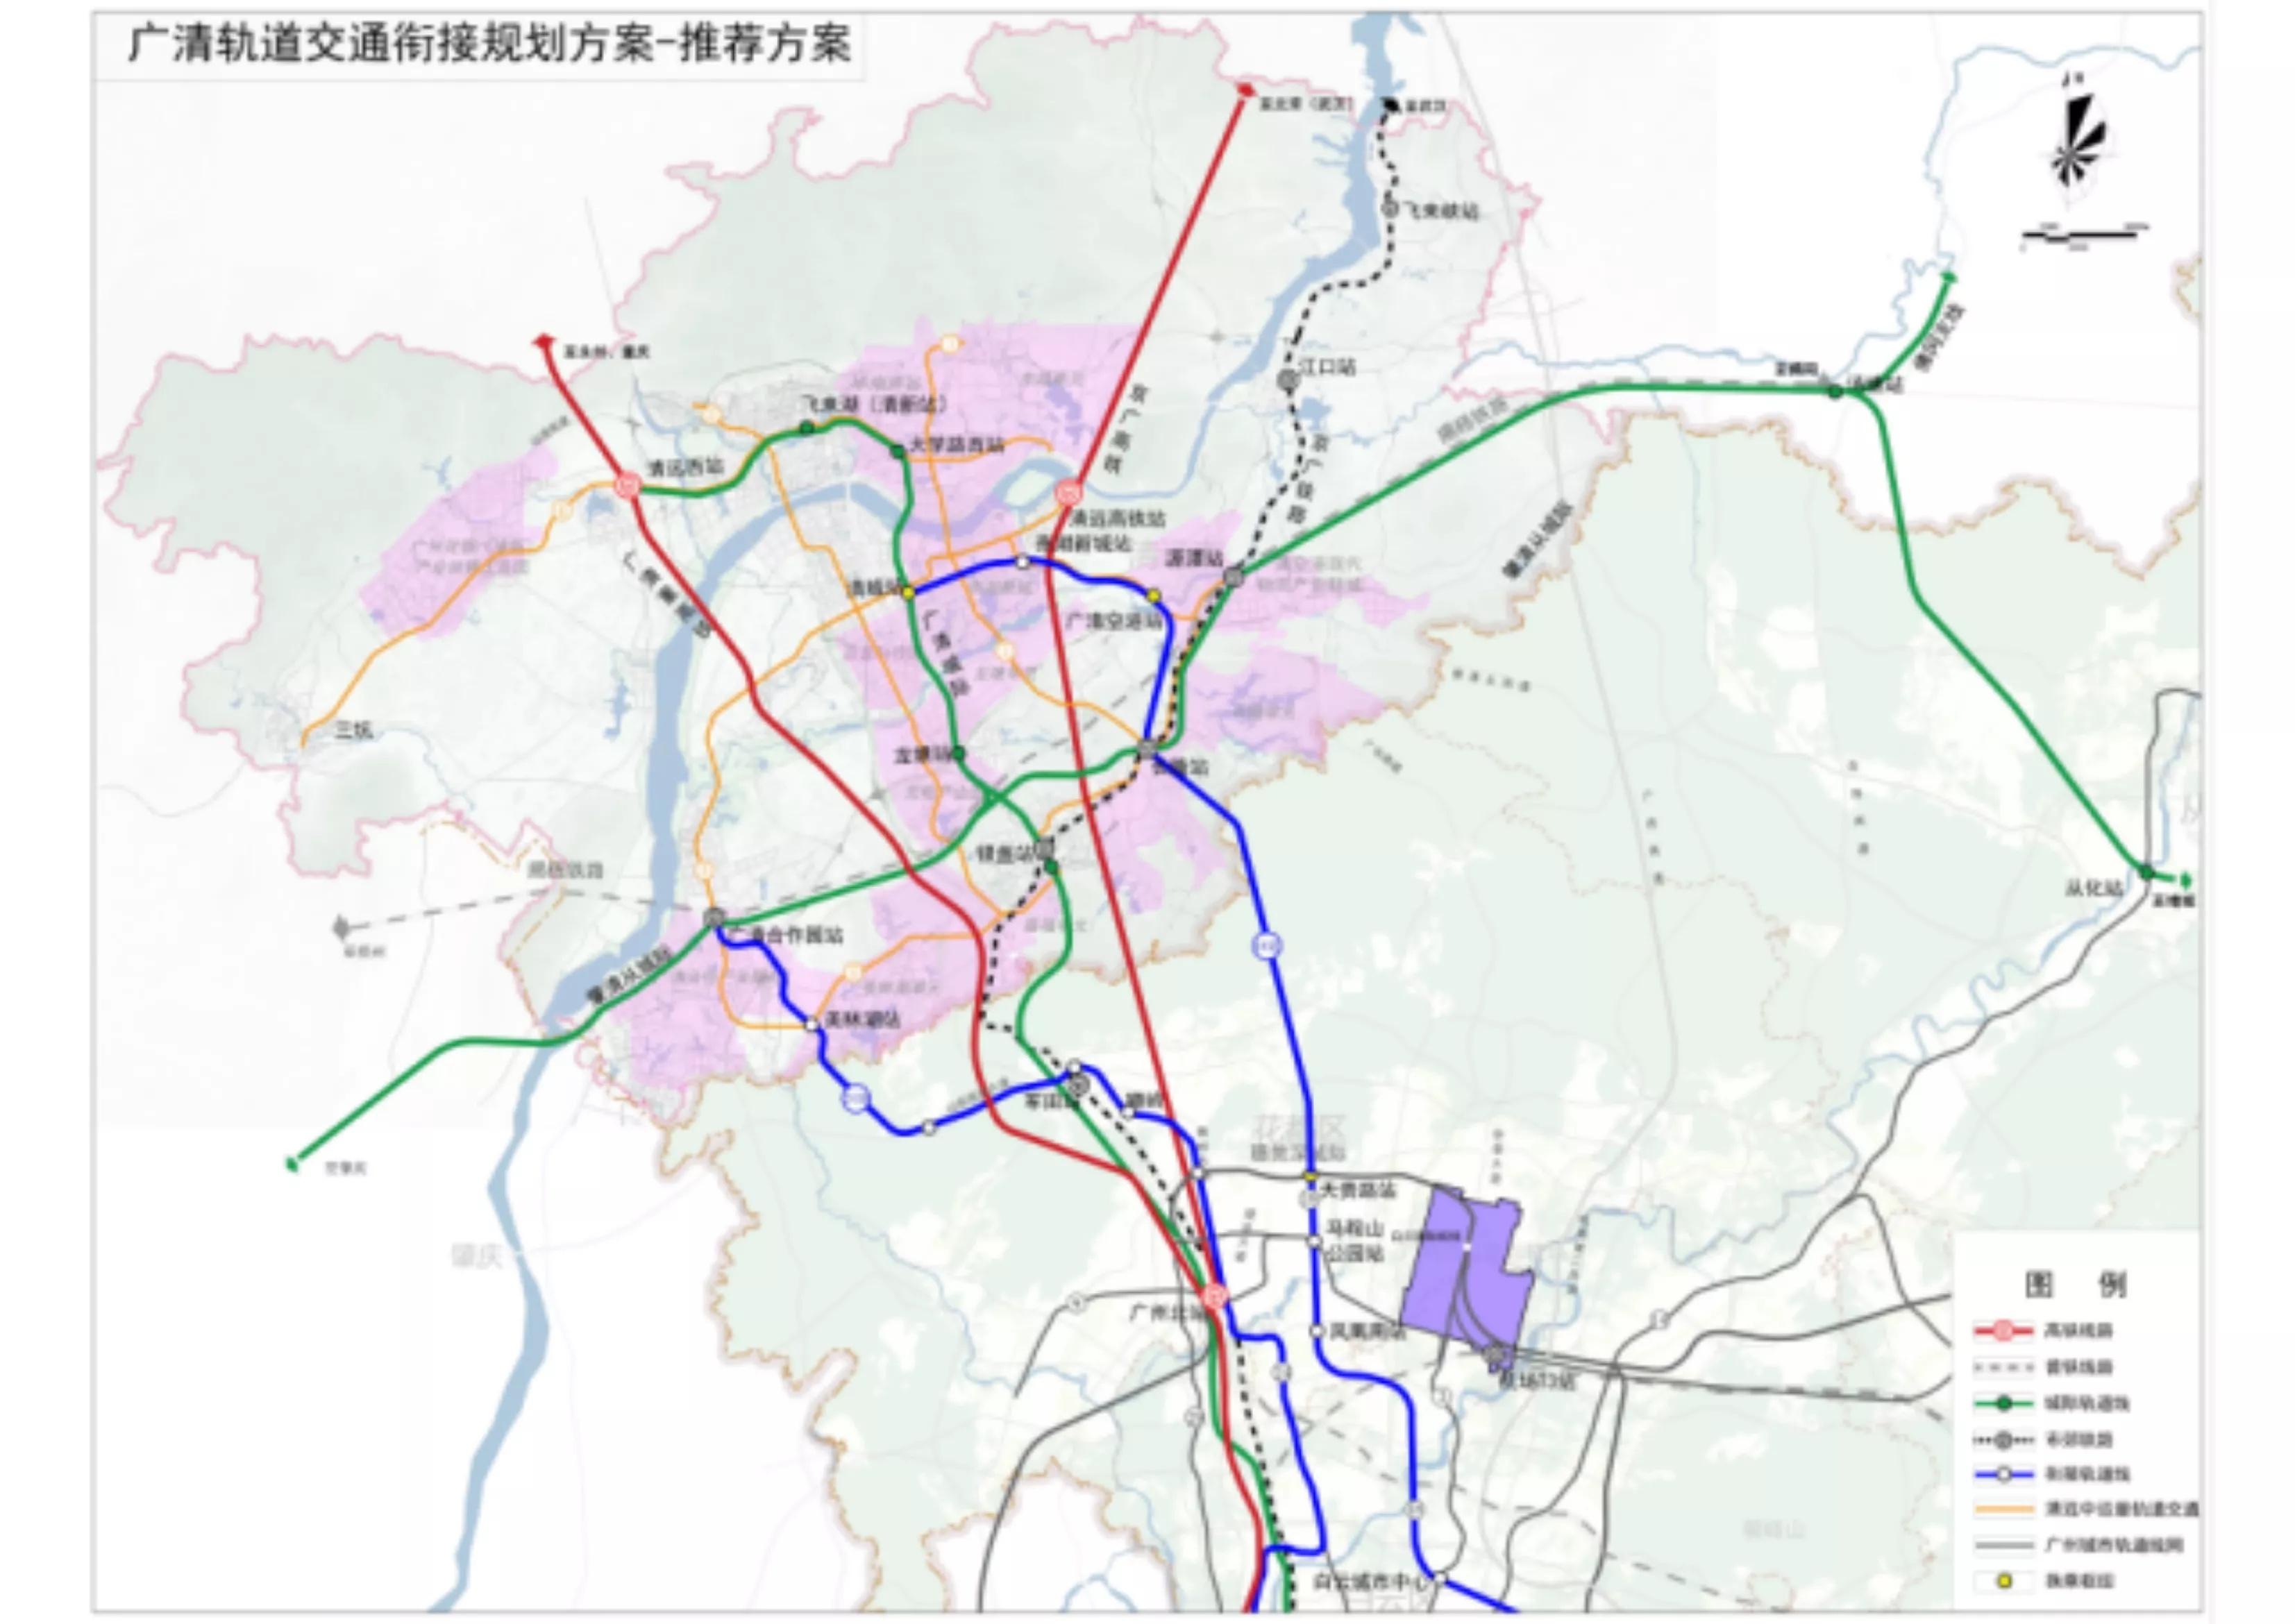 广东省政府在答复中表示,新修编的广州市城市总体规划已预留地铁18号